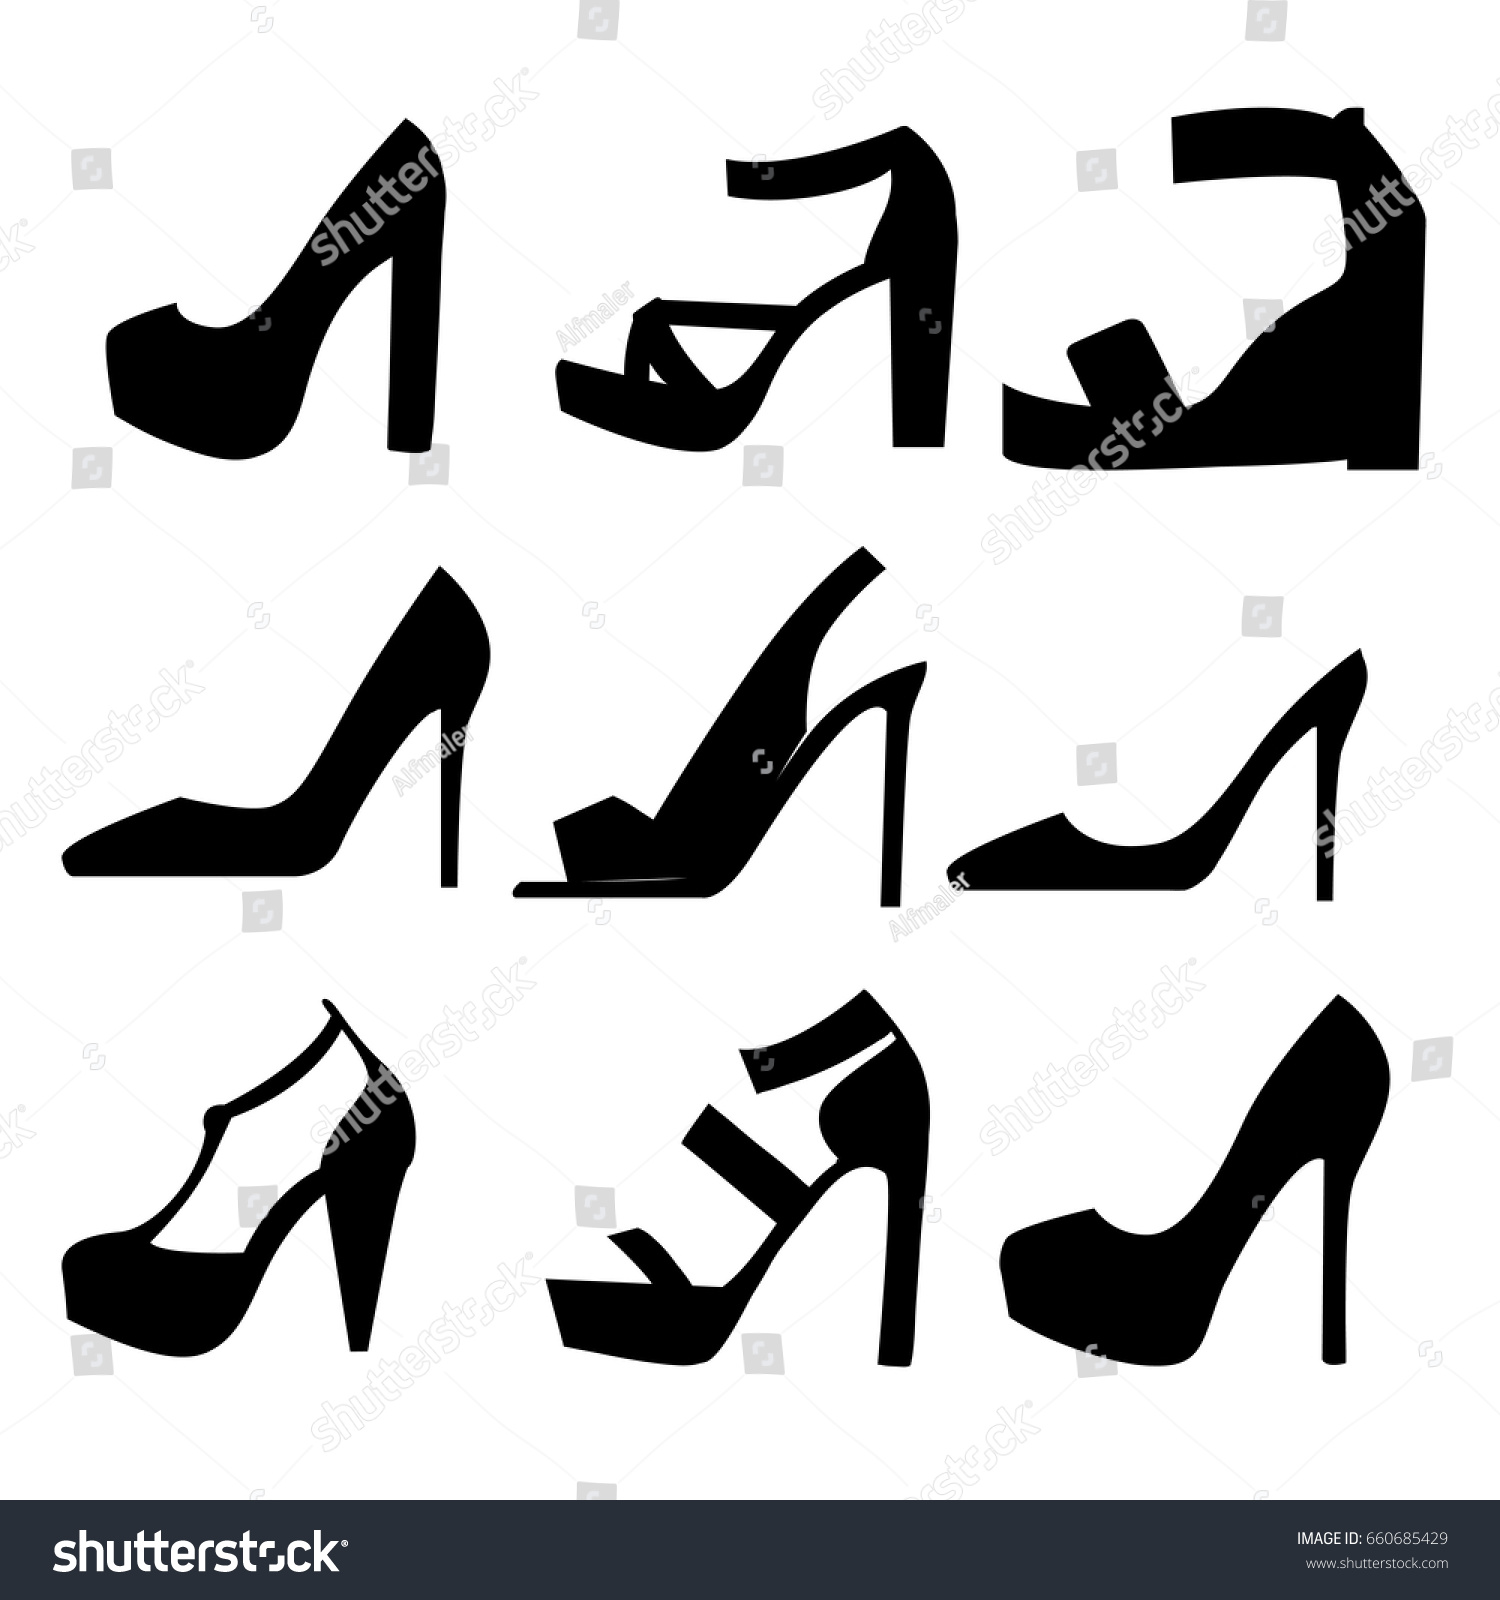 types of women's heels